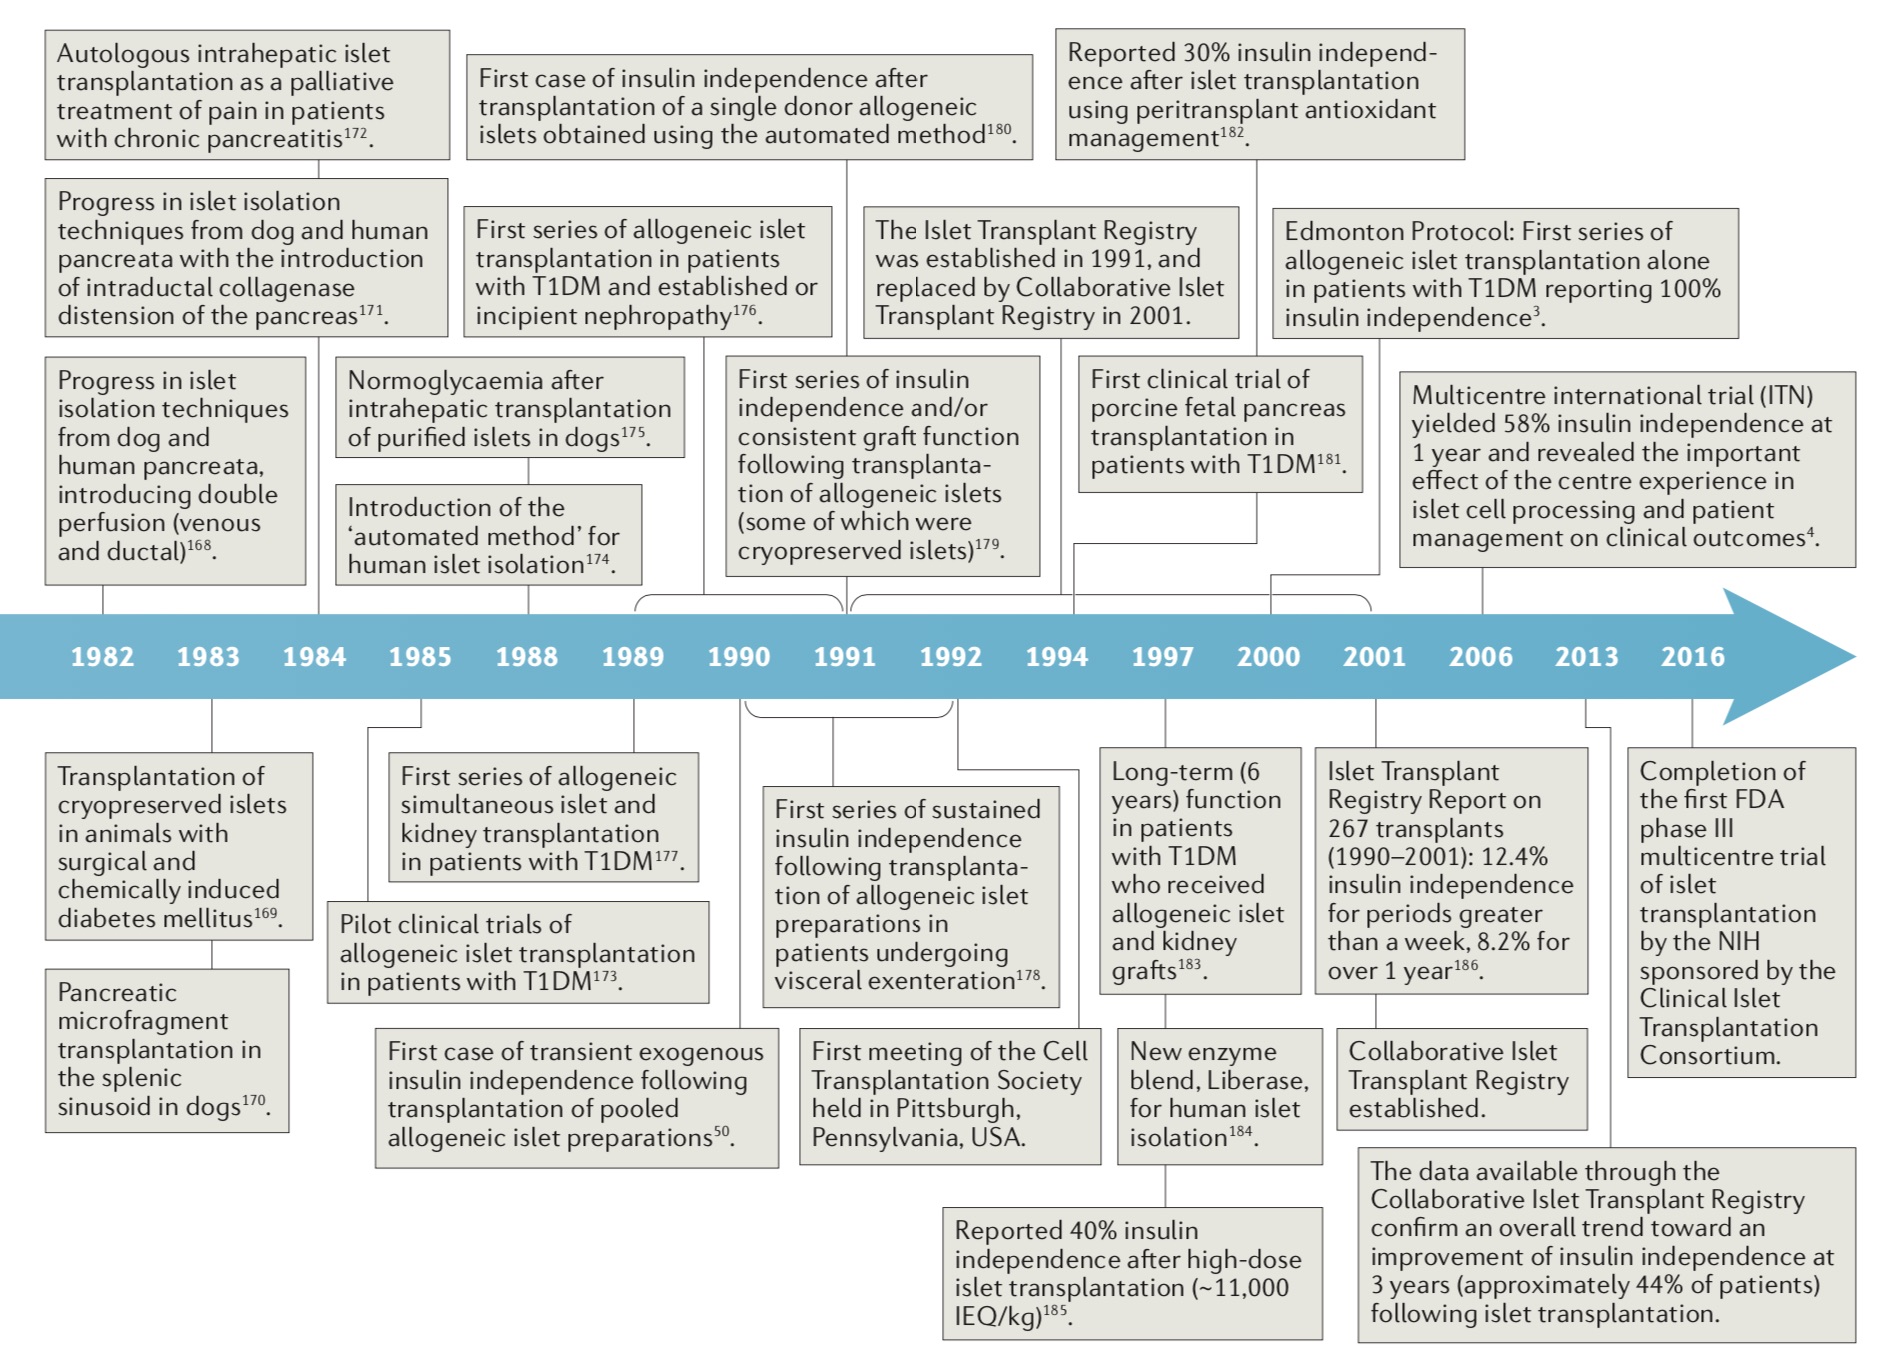 胰岛移植发展时间表。图片来源：James Shapiro等人论文